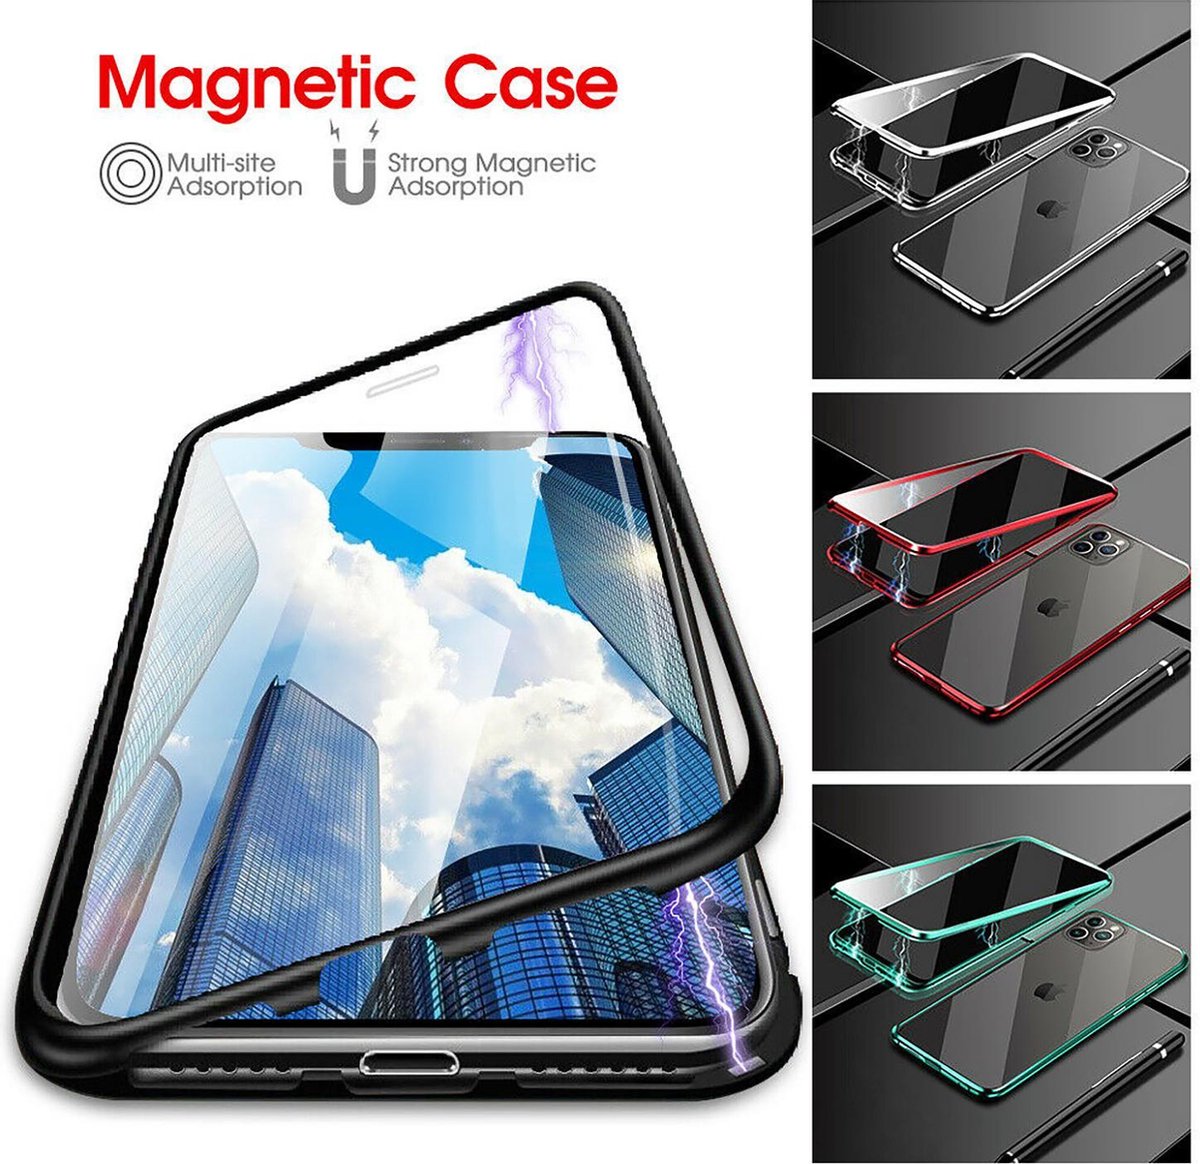 LitaLife Apple iPhone 11 Pro Magnetic hoesje Zwart 360 graden hoesje - 2 in 1 gehard glas voor + achter - Magnetisch hoesje